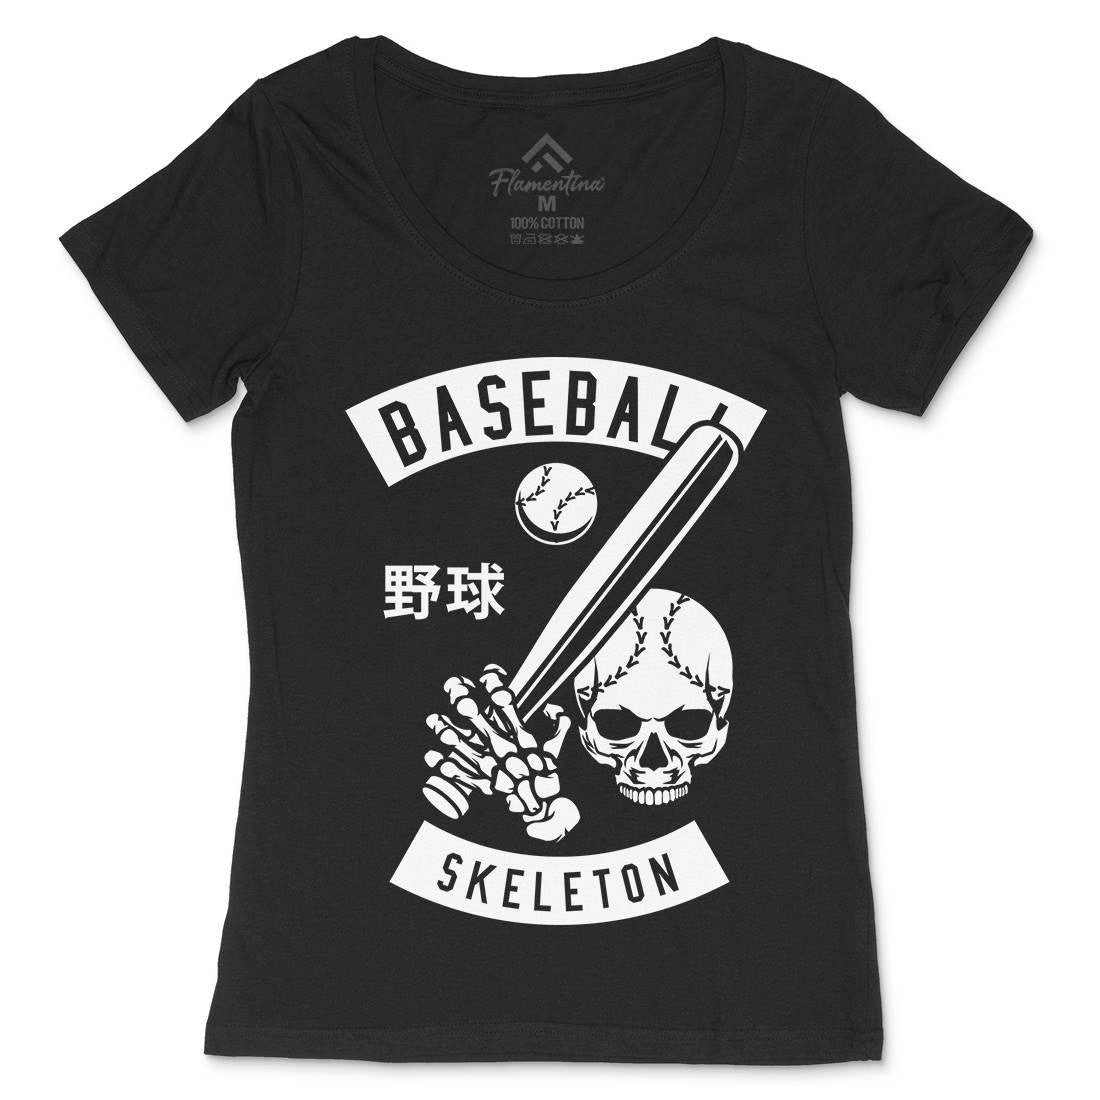 Baseball Skeleton Womens Scoop Neck T-Shirt Sport B489